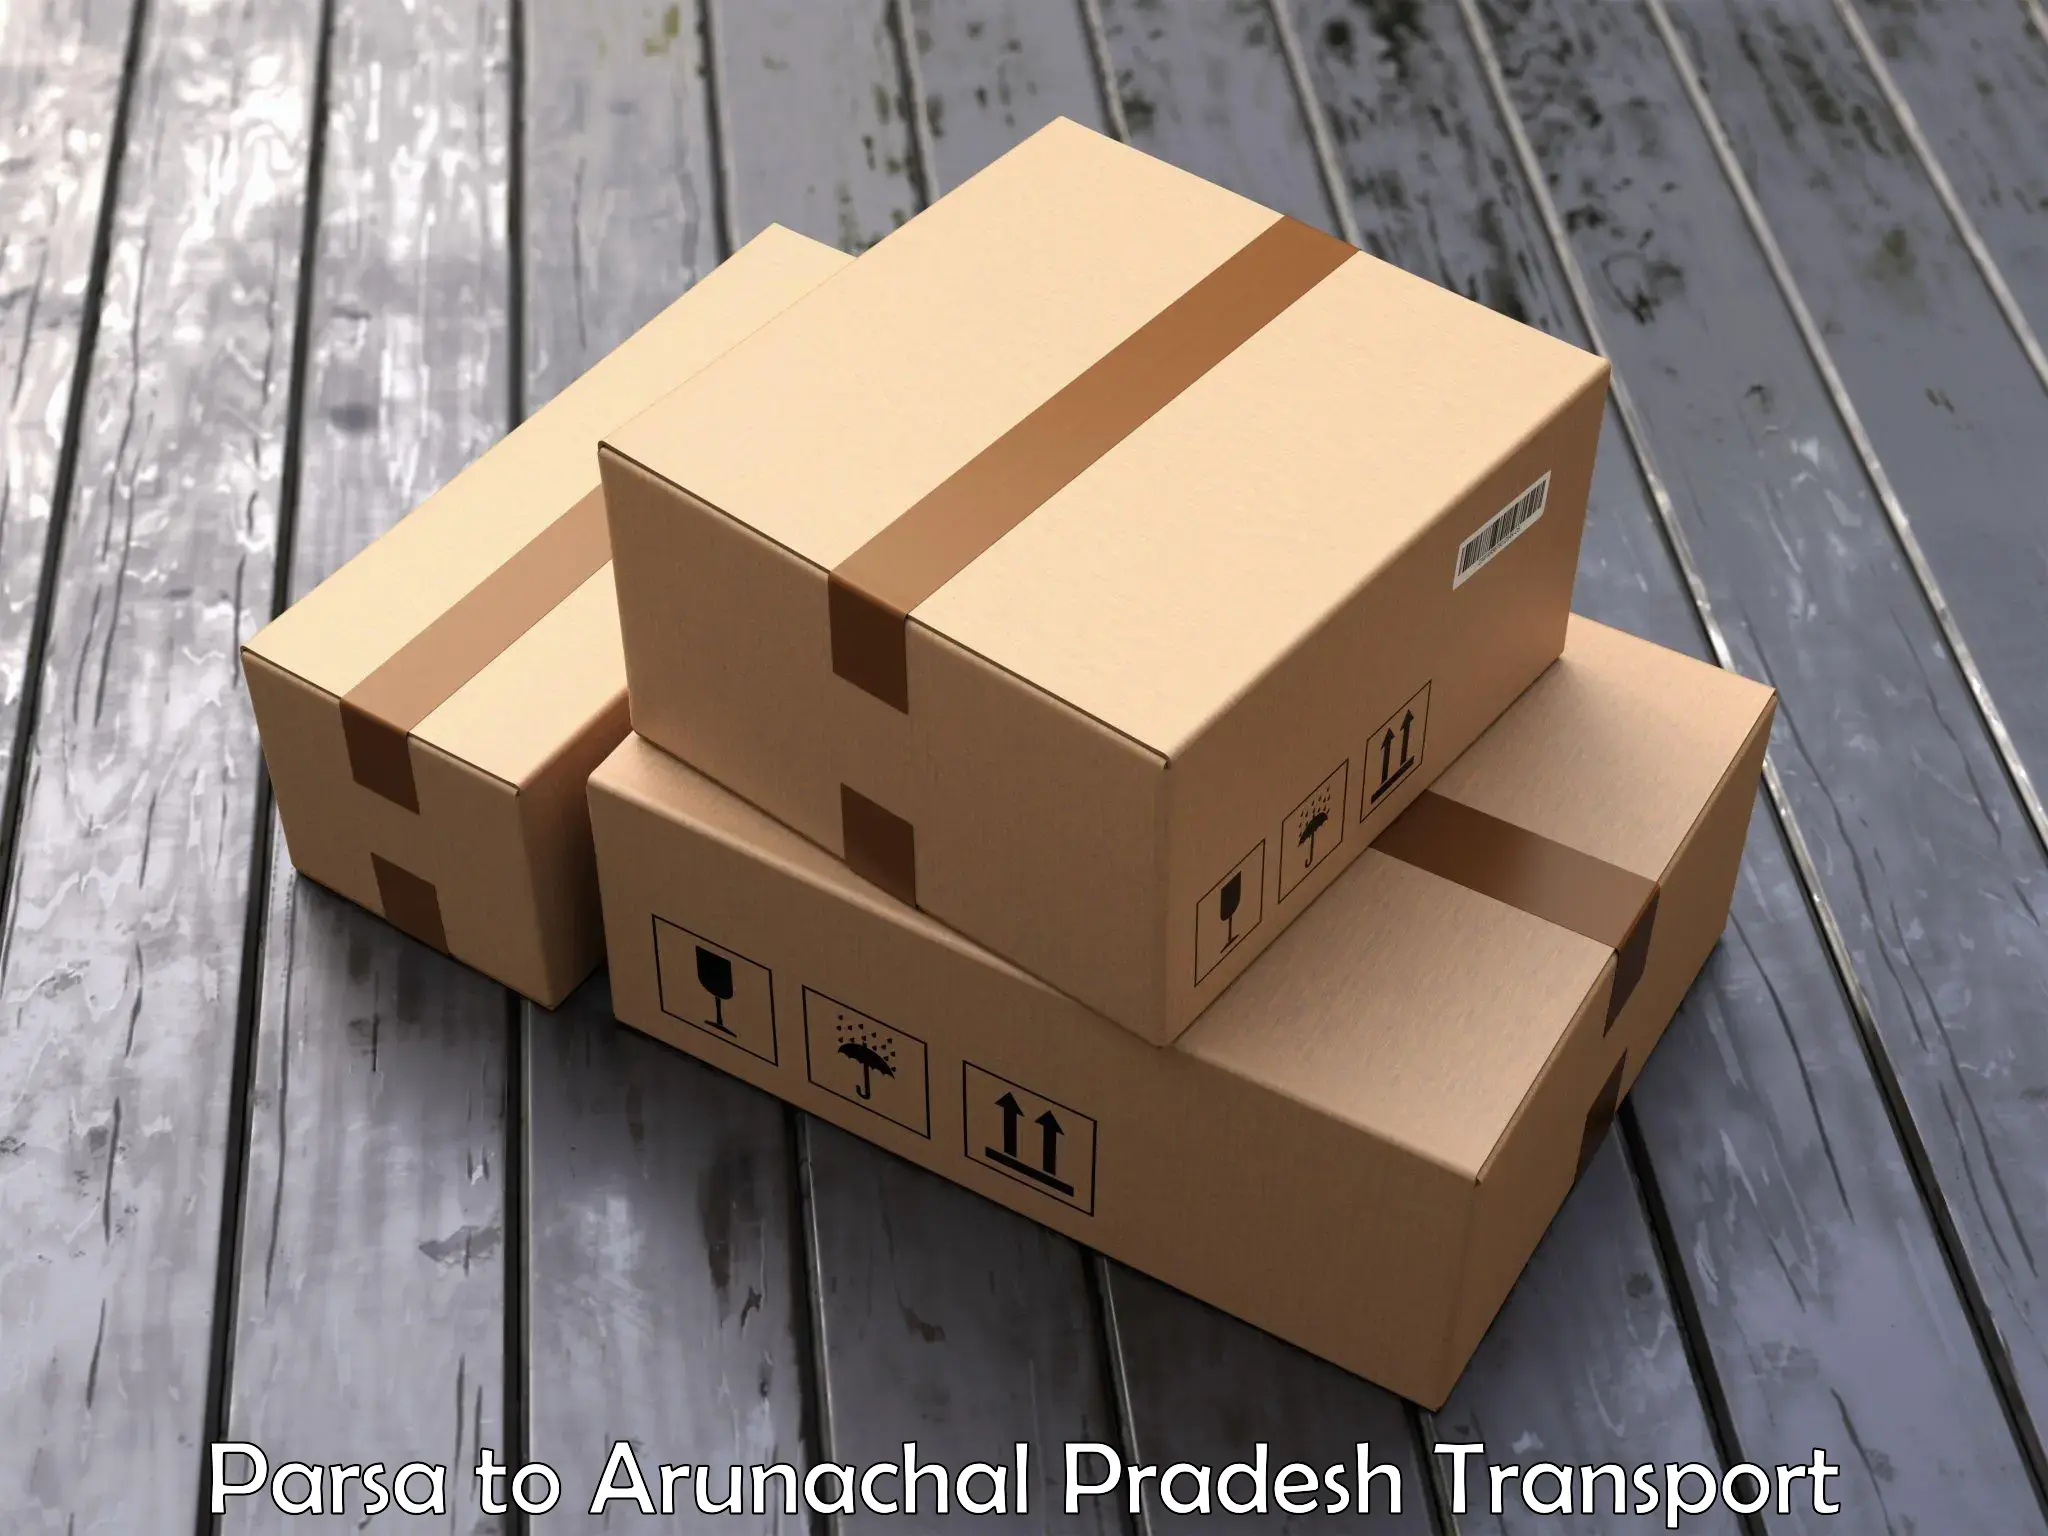 Nearest transport service Parsa to Arunachal Pradesh